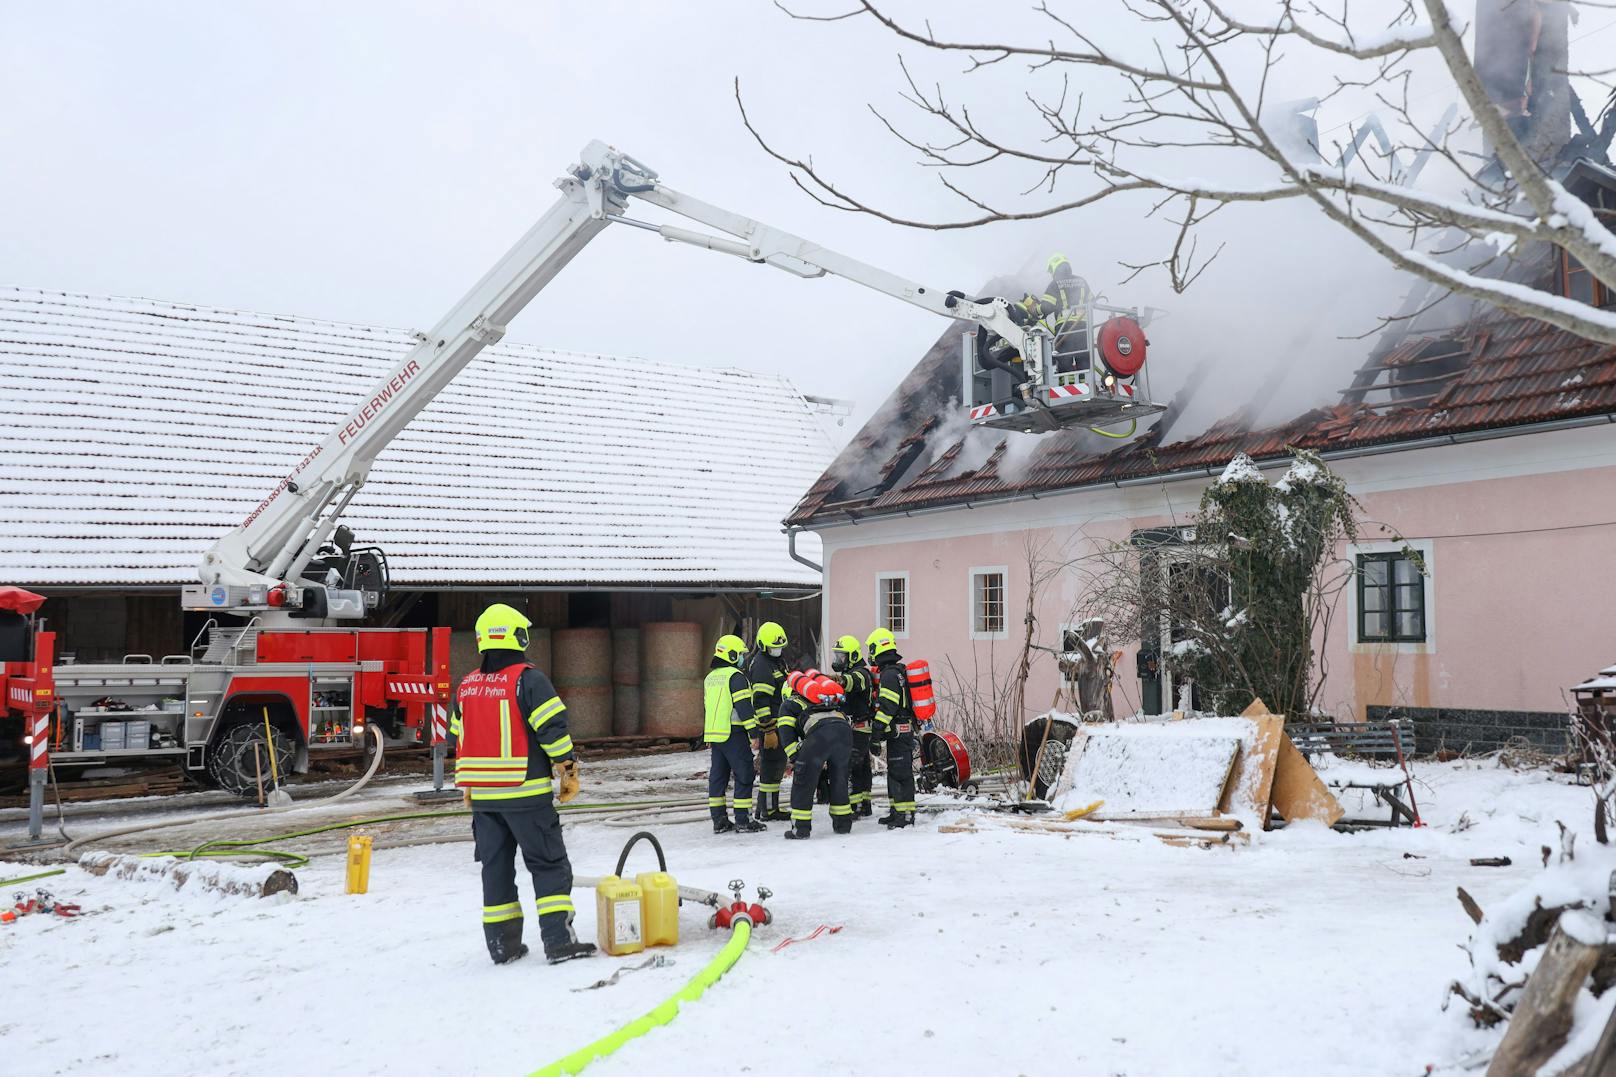 Als die Feuerwehr am Einsatzort eintraf, stand bereits der Dachstuhl in Brand.